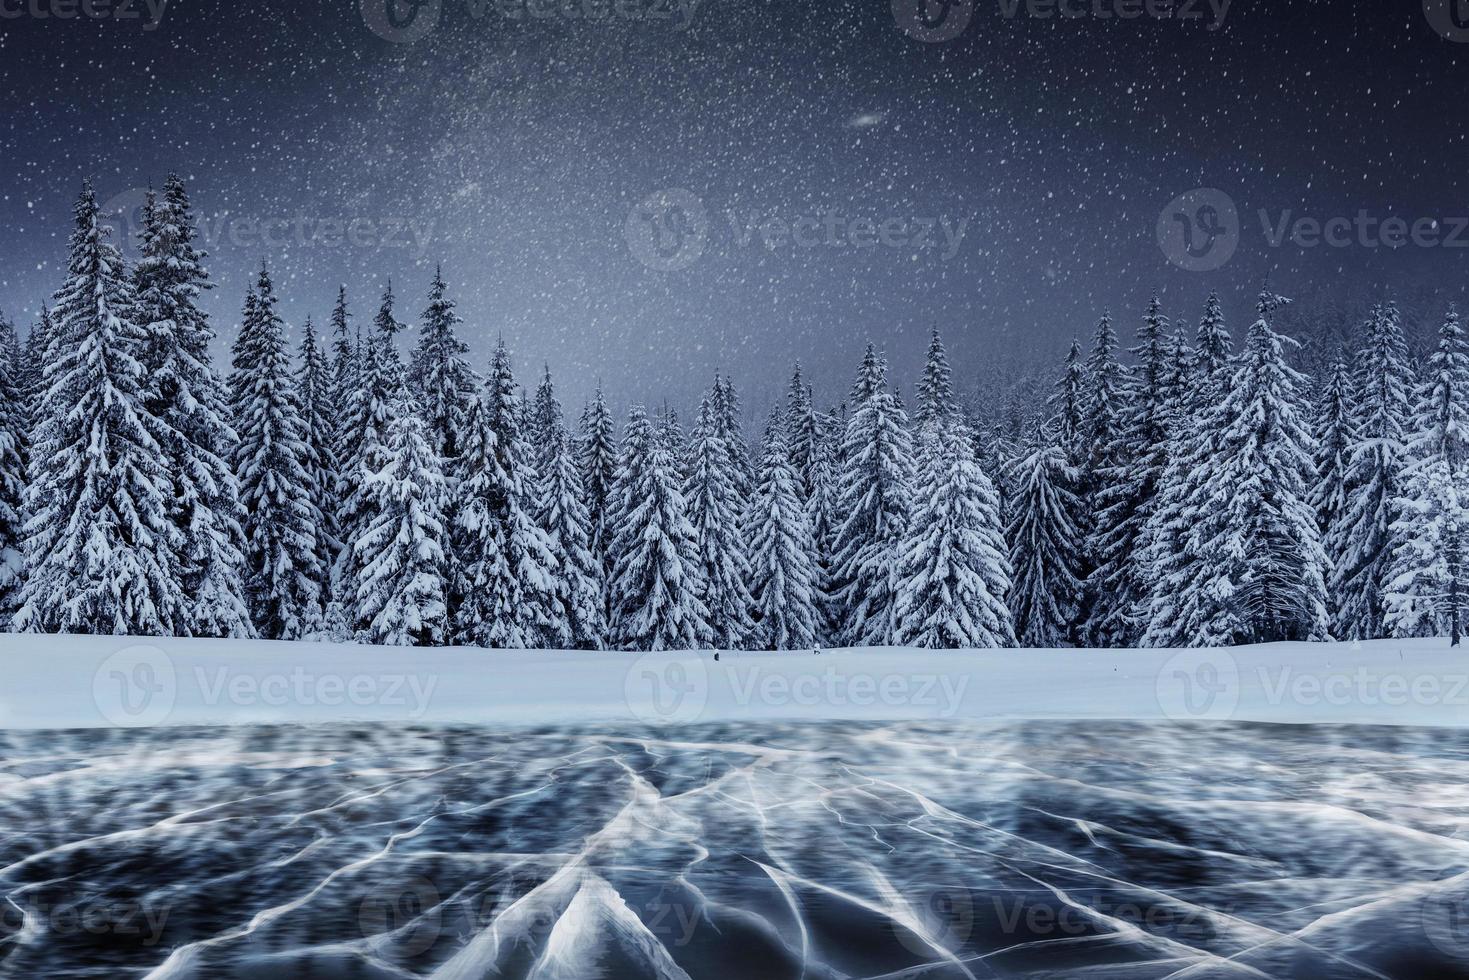 Molkerei Star Trek über den Winterwäldern. Risse auf der Oberfläche des blauen Eises in der Nähe von Kiefernhügeln. zugefrorener See in den Bergen. karpaten ukraine europa foto